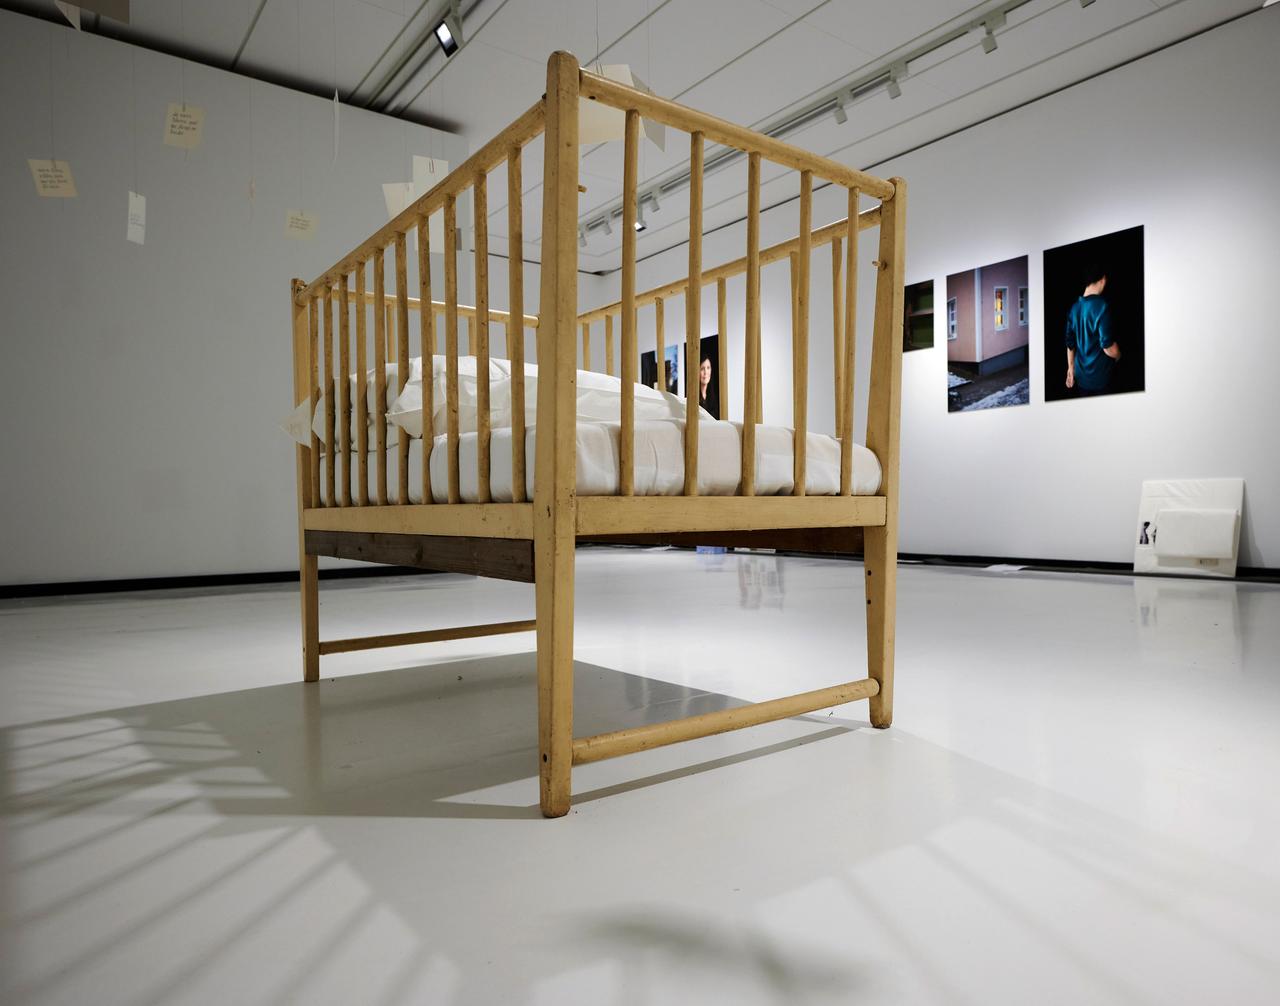 In der Ausstellung «Wochenkrippen in der DDR» steht ein hölzernes Gitterbettchen im Zentrum eines Raumes.